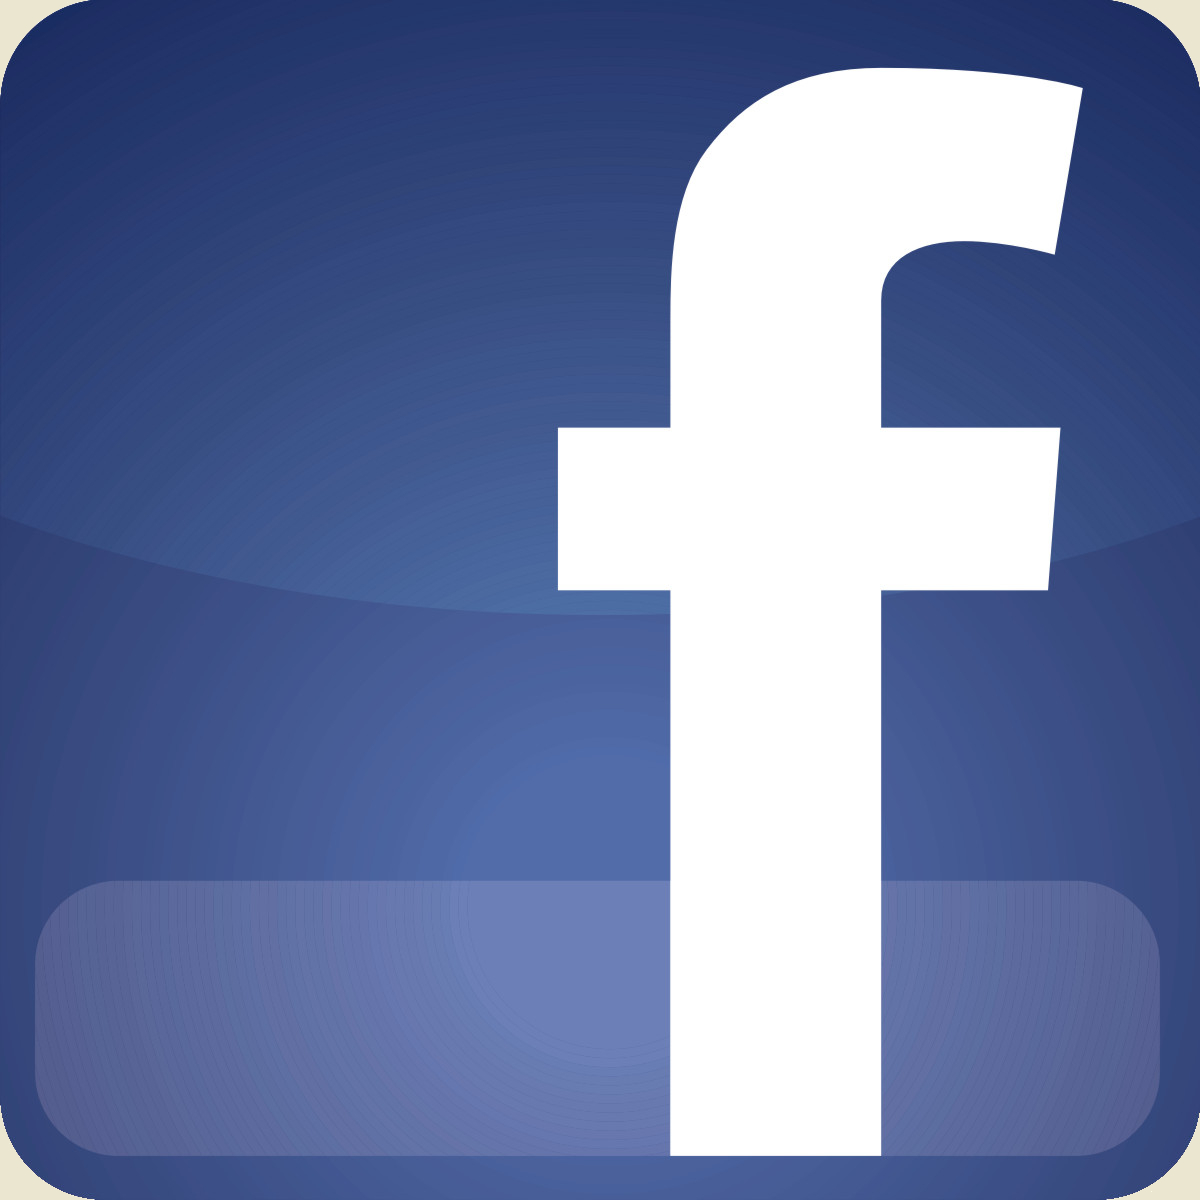 Facebook Icon Free Vector In 